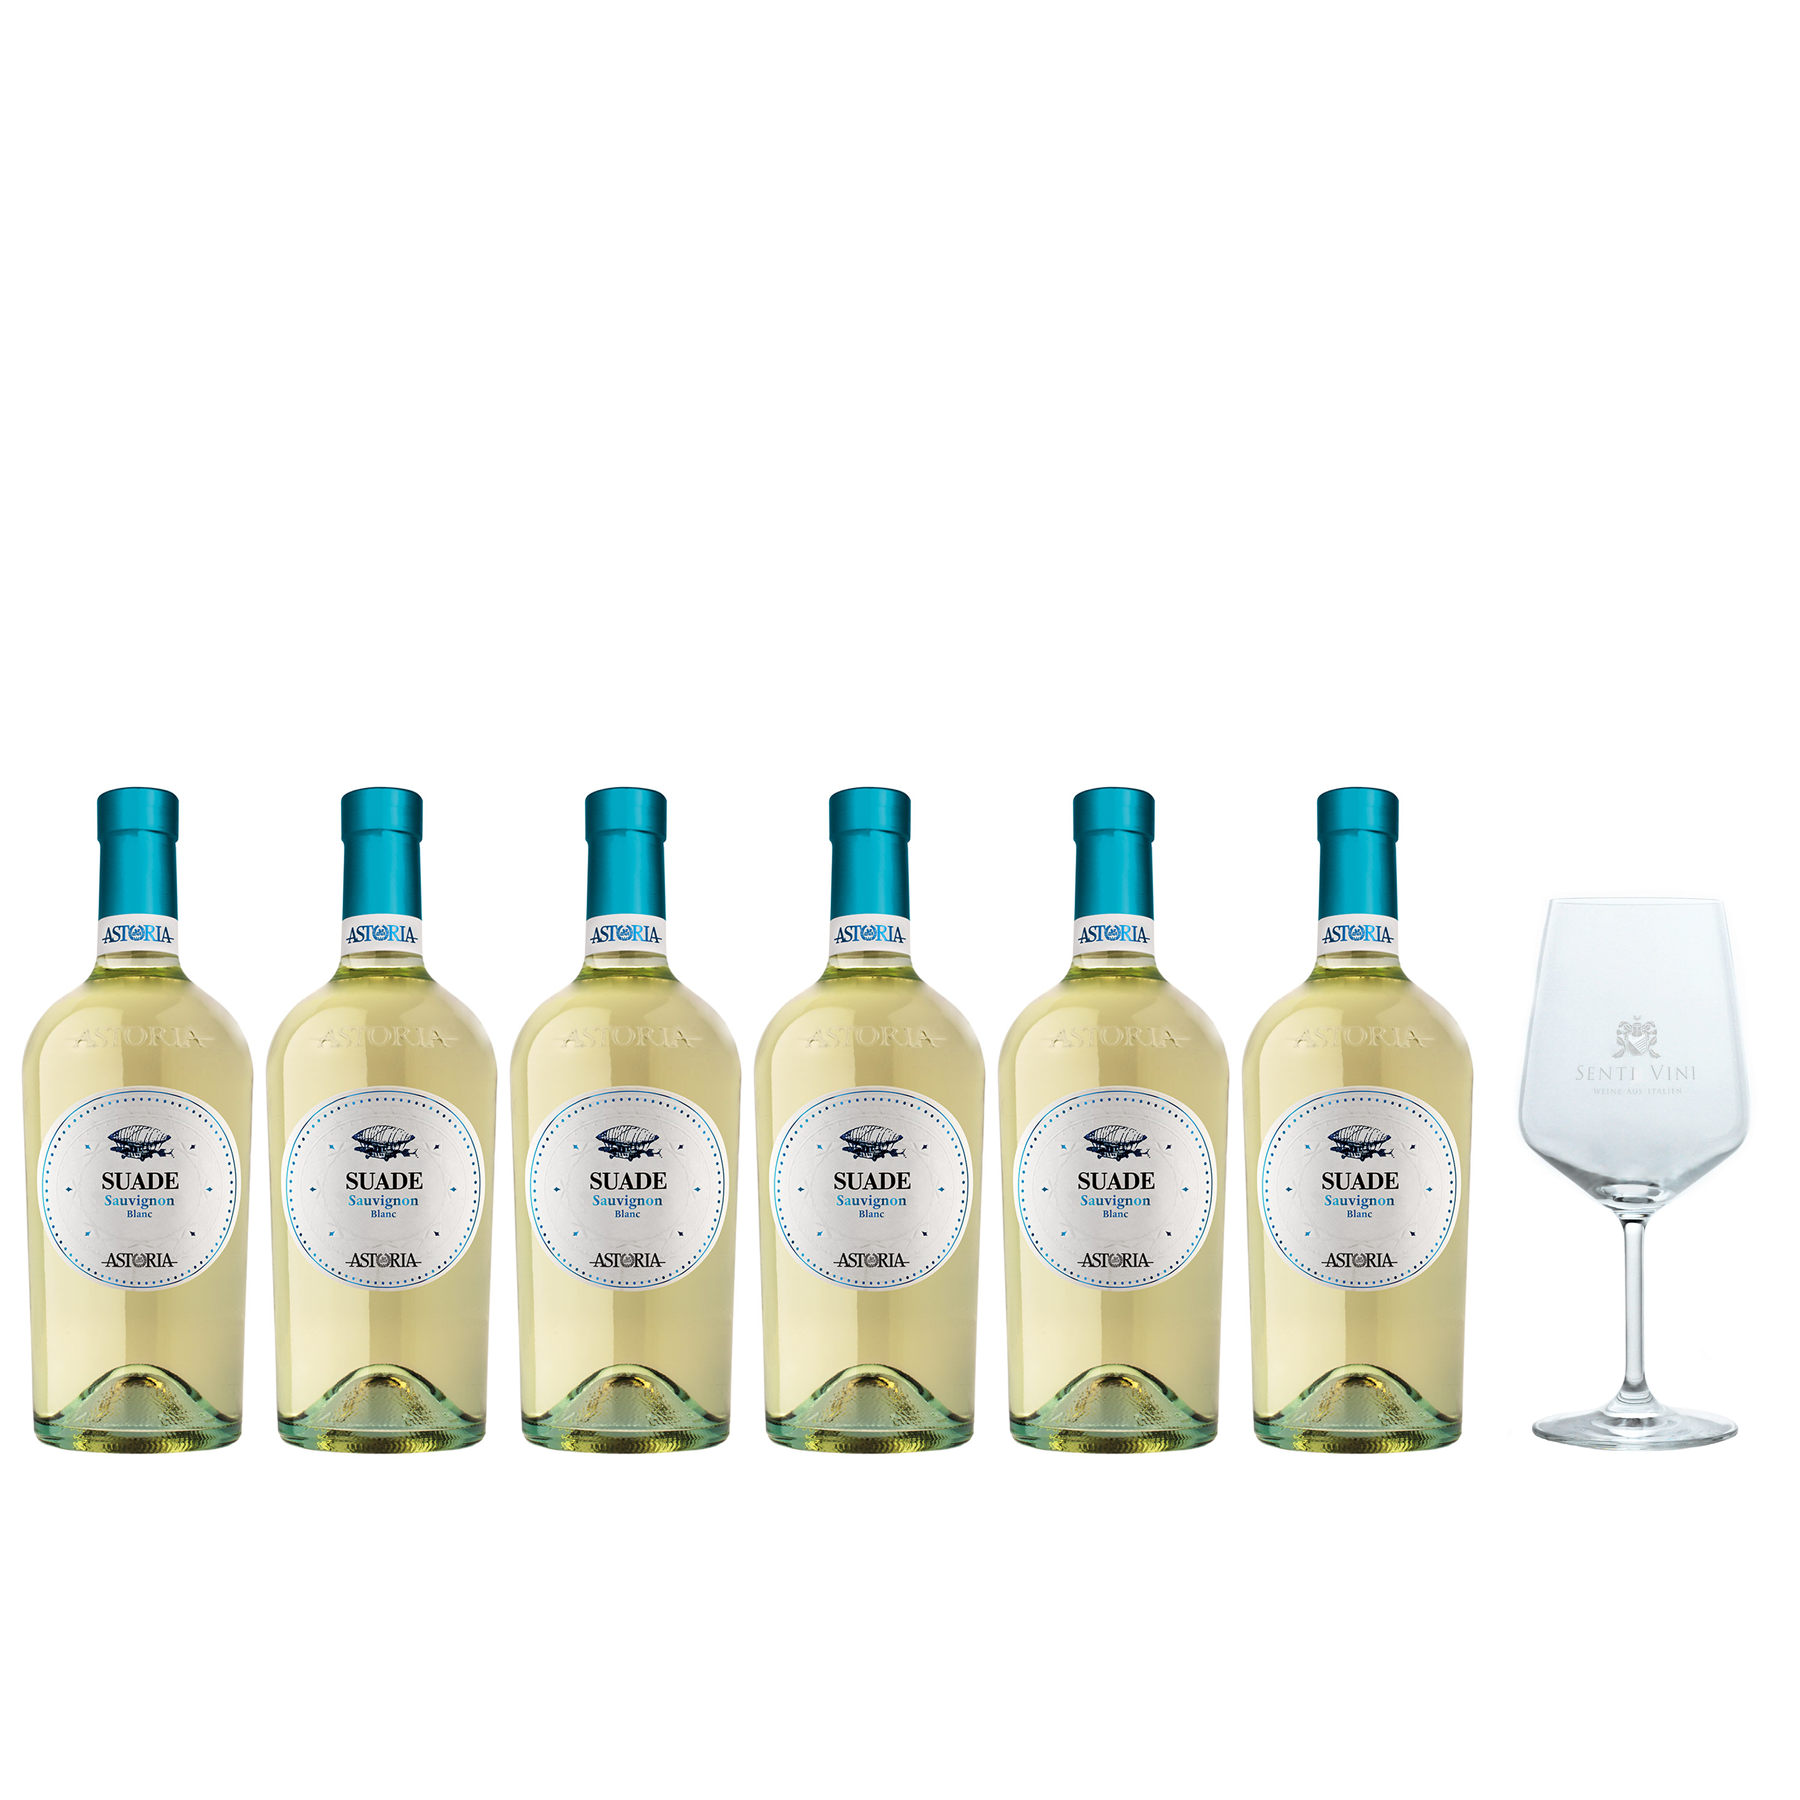 Sparpaket Astoria Suade Sauvignon Blanc IGT 2022 (6 x 0,75l) mit Spiegelau  Senti Vini Weinglas | Online kaufen bei Senti Vini - Weine aus Italien